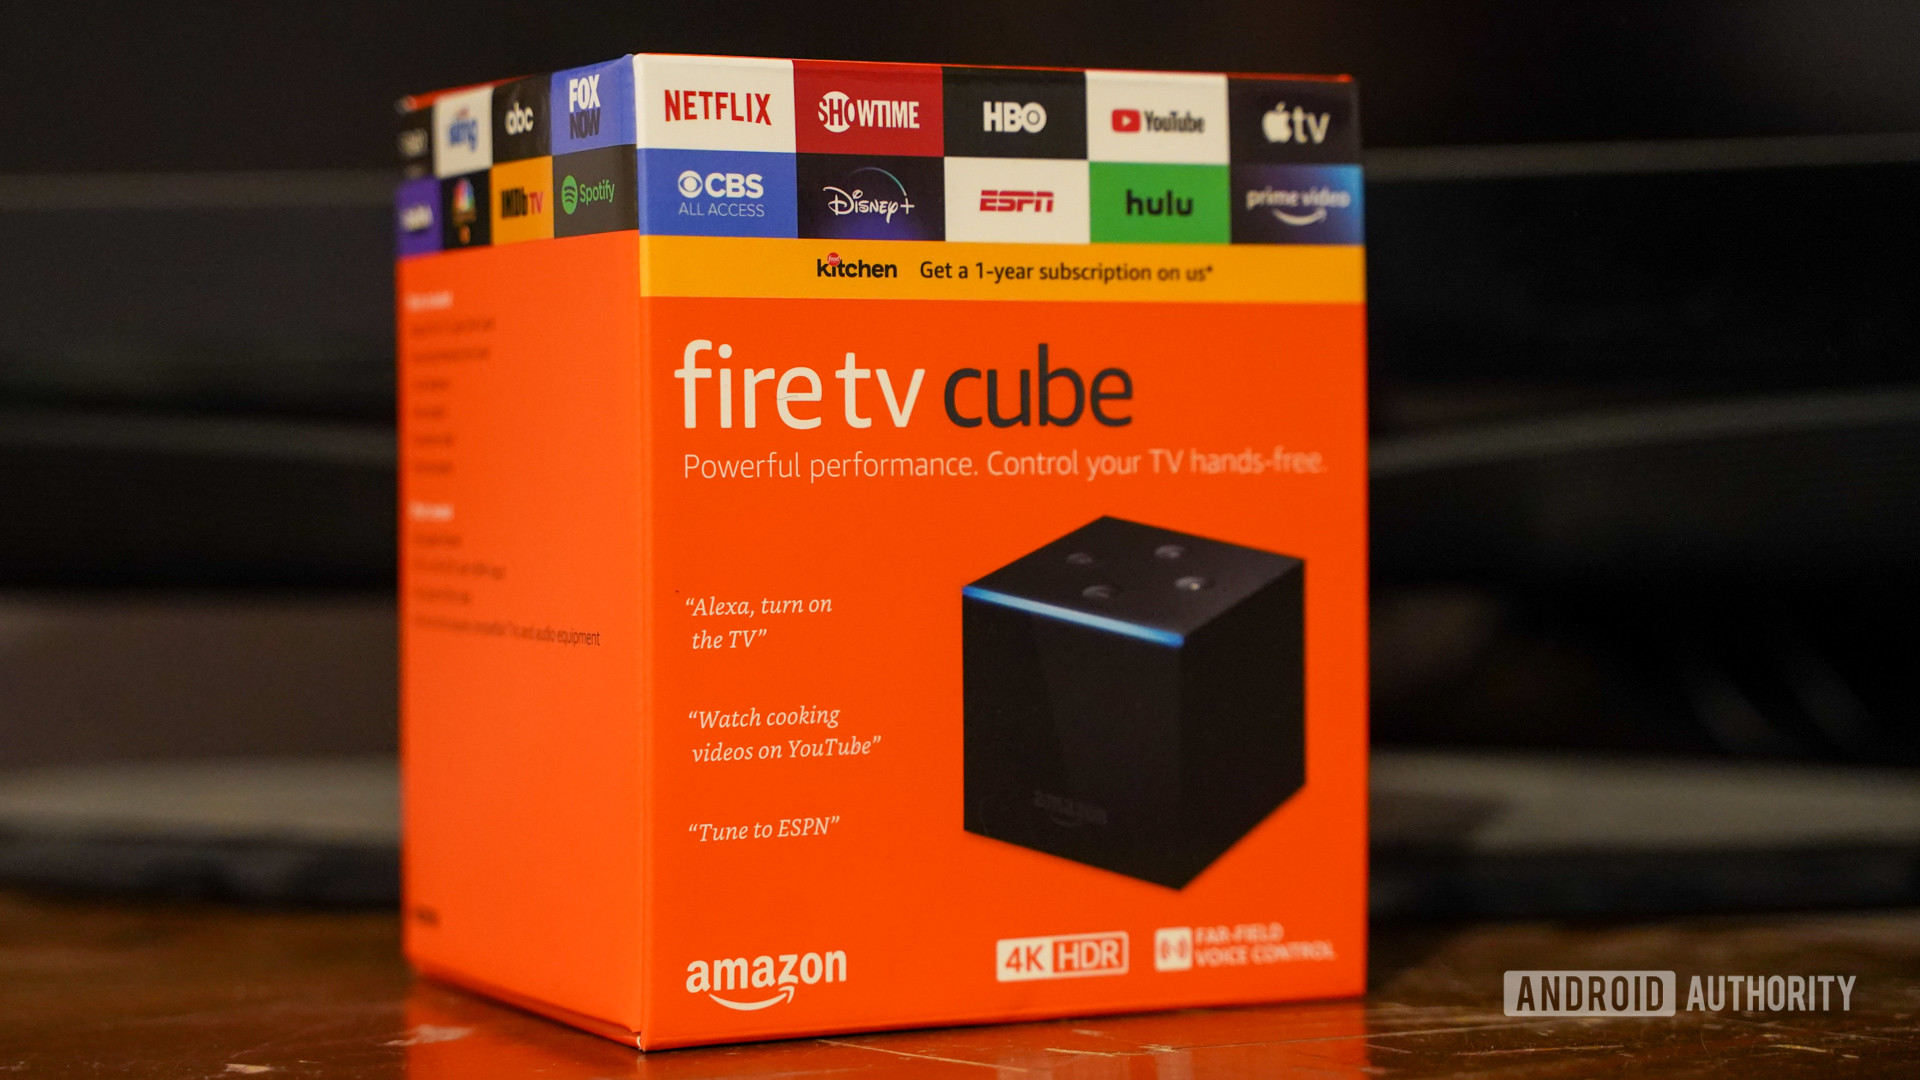 Fire TV Cube (3rd Gen) Media Streamer with Alexa